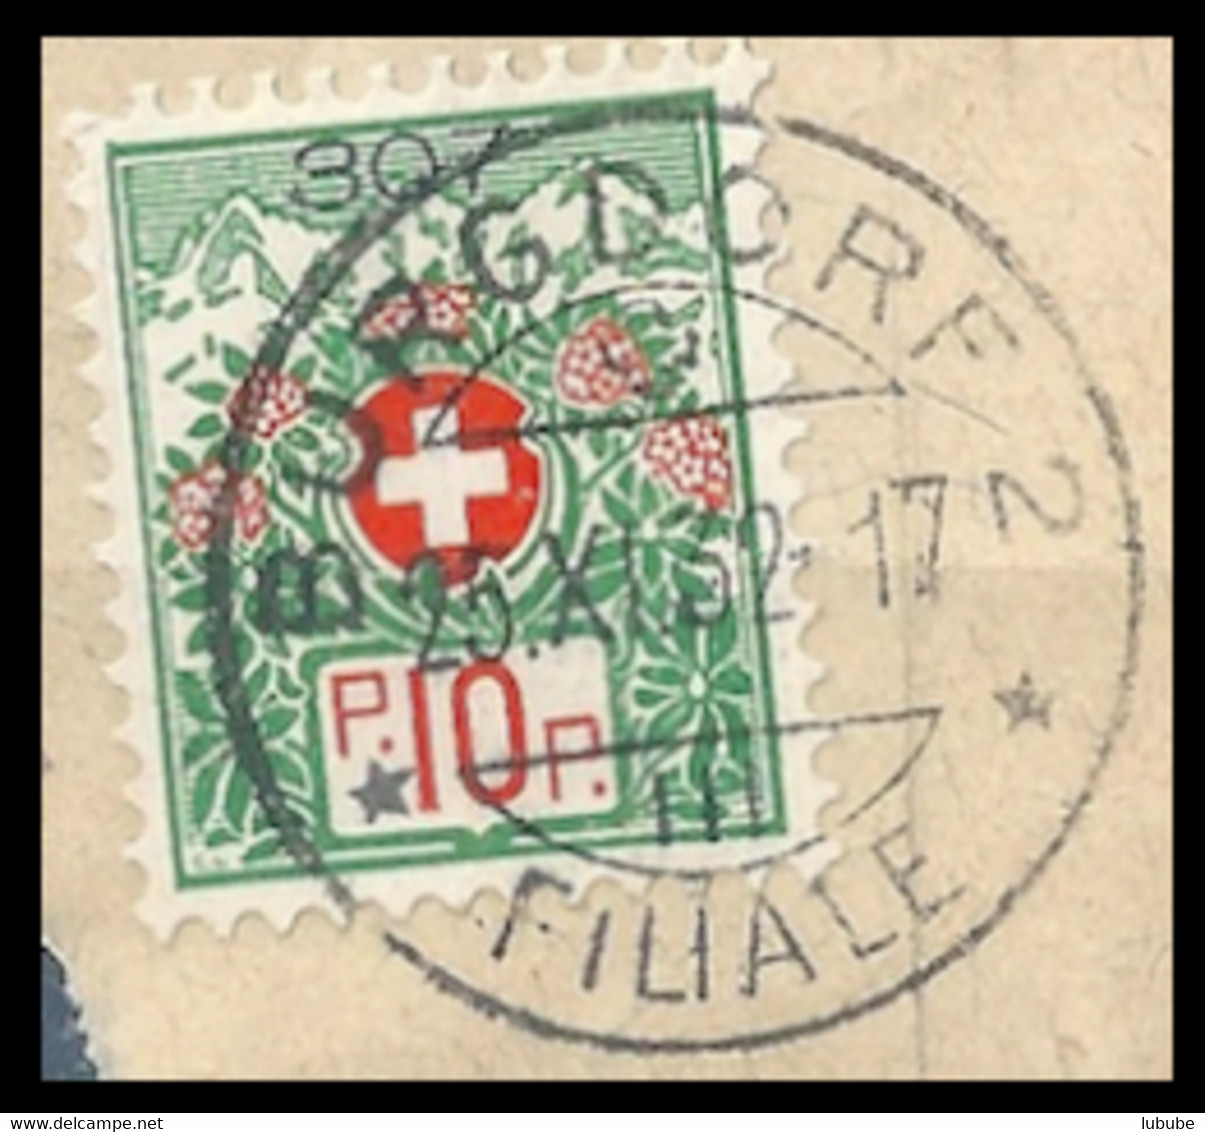 Portofreiheit 12A  "Burgdorf 2 Filiale"  (Kontrollzeichen 307 - Bezirks Krankenhaus)   1932 - Franchise